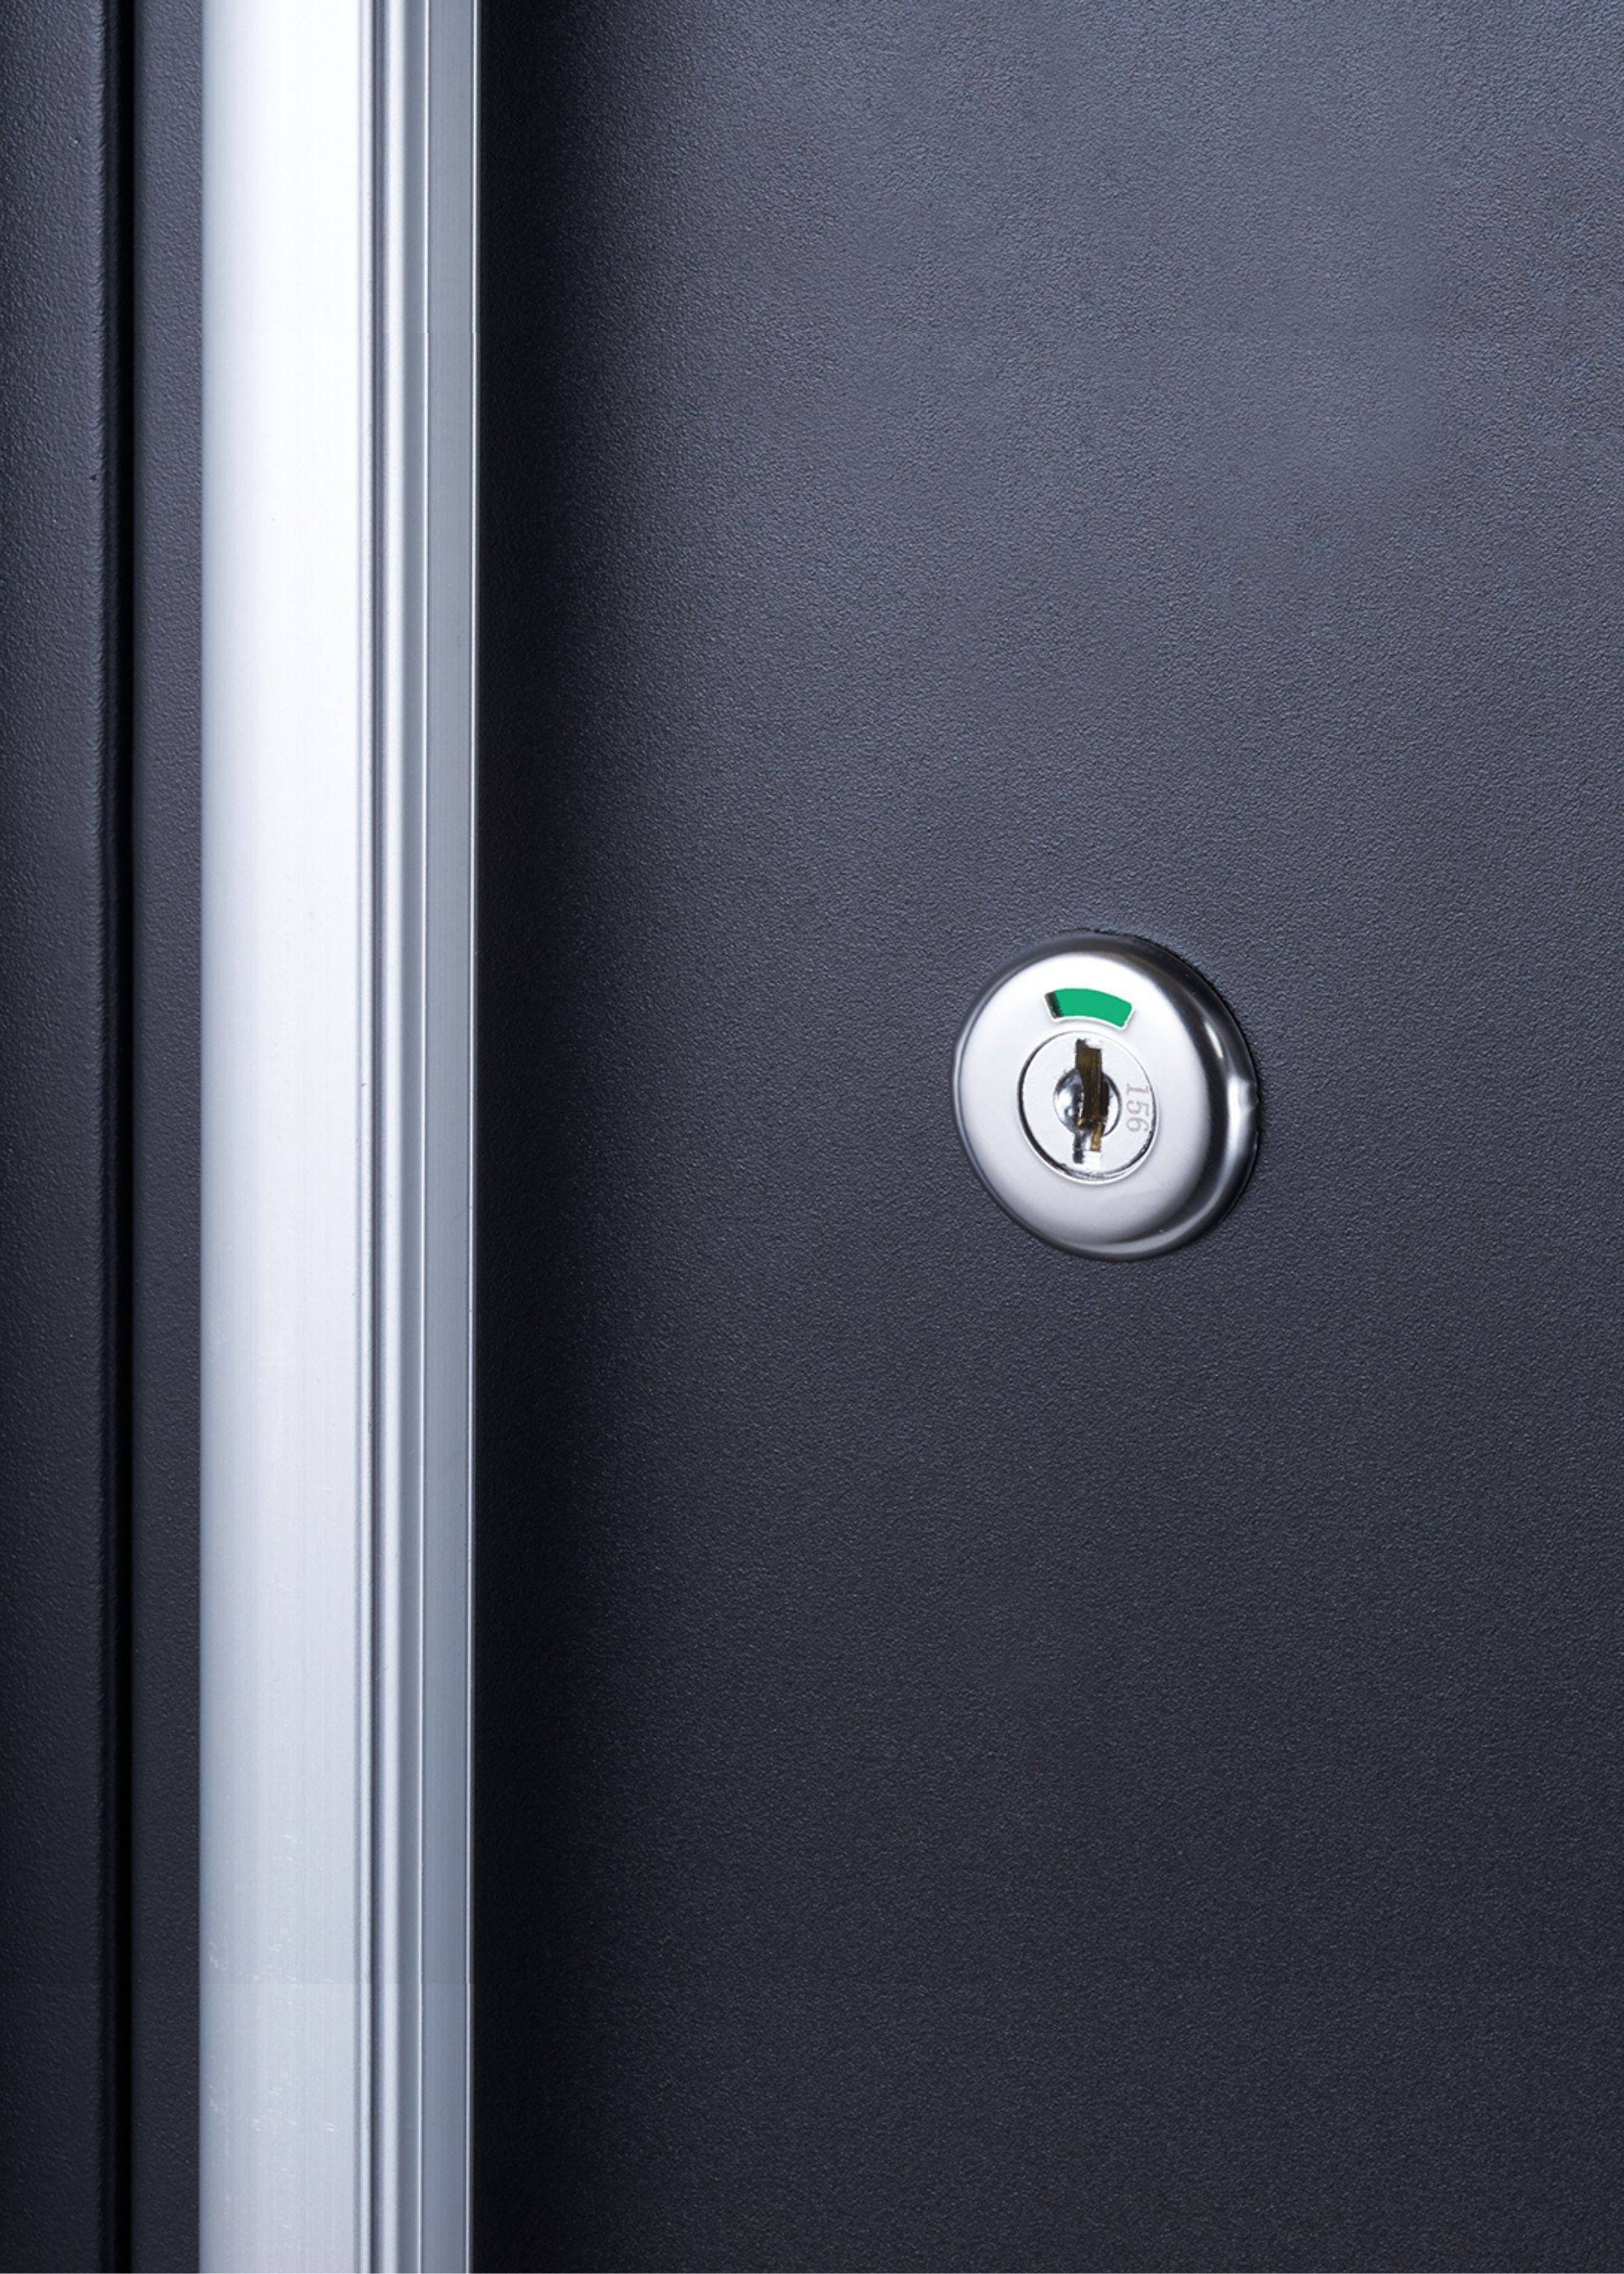 cabinet key lock hole